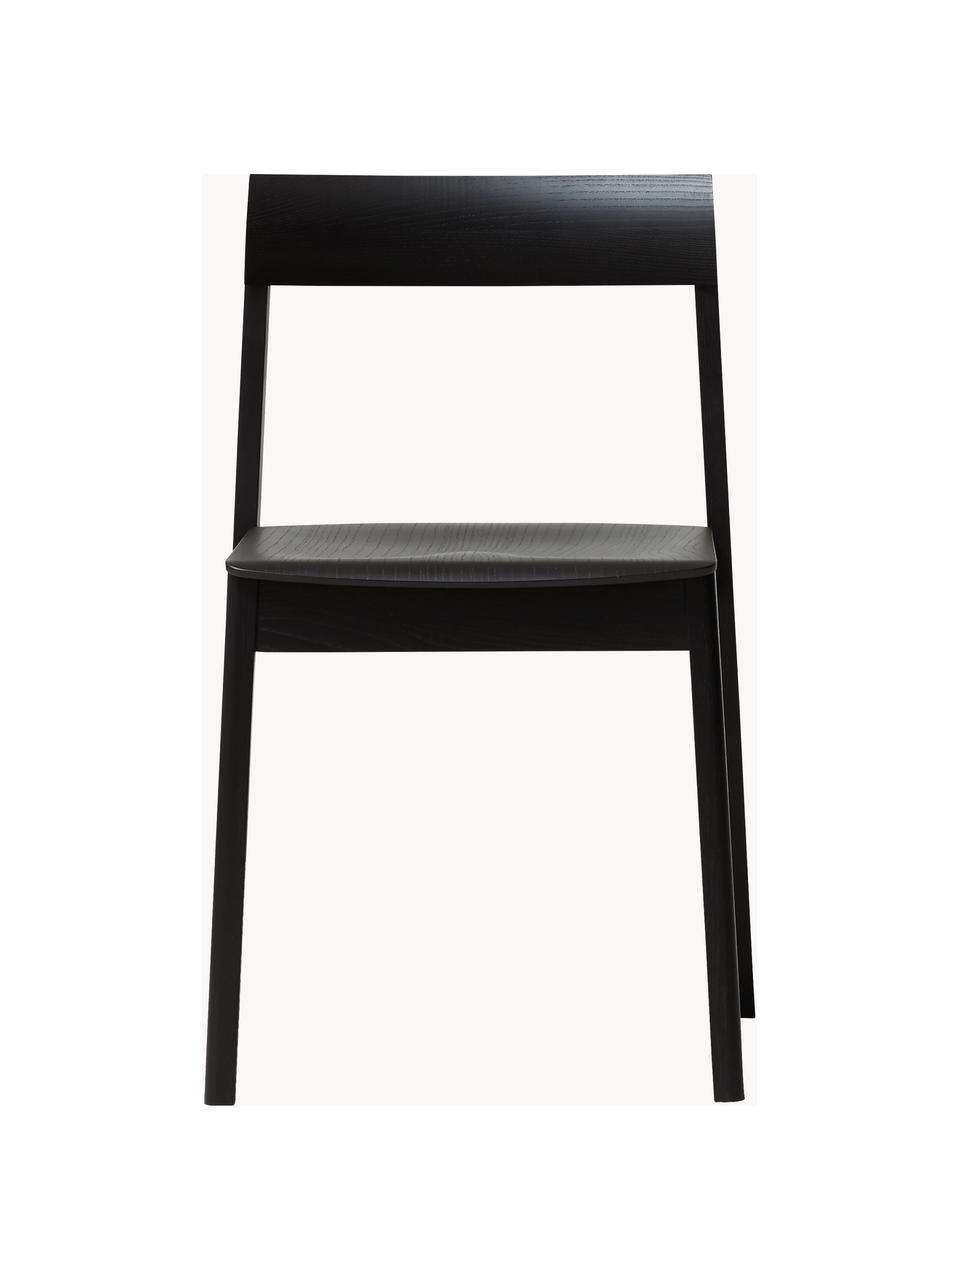 Stapelbare Eichenholz-Stühle Blueprint, 2 Stück, Eichenholz, Eichenholz, schwarz lackiert, B 46 x T 49 cm